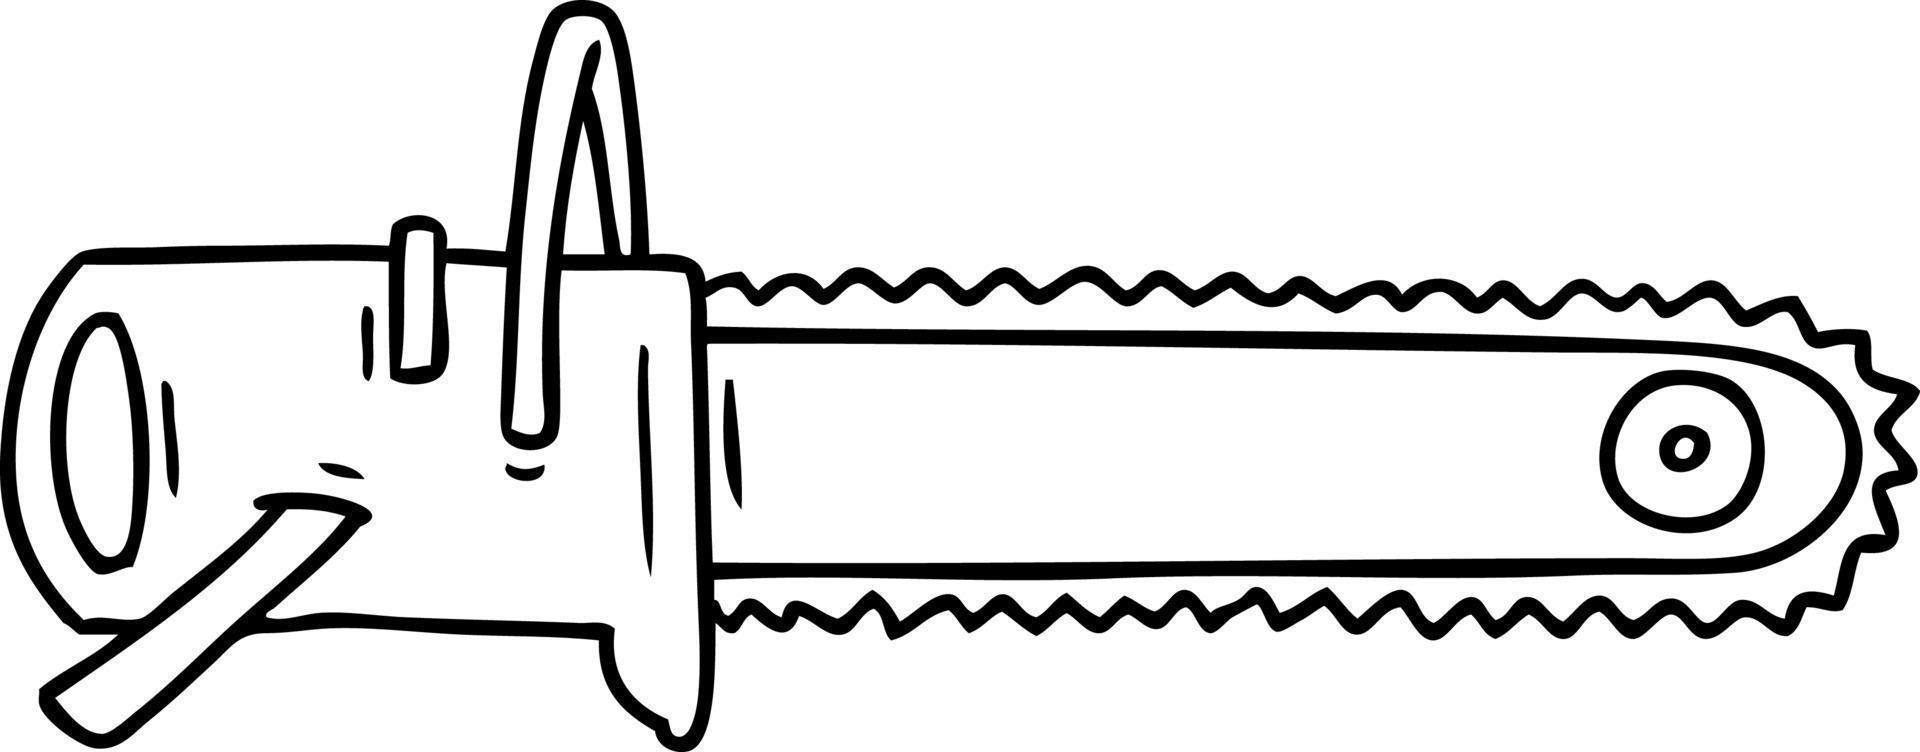 doodle de desenho de linha para uma motosserra vetor